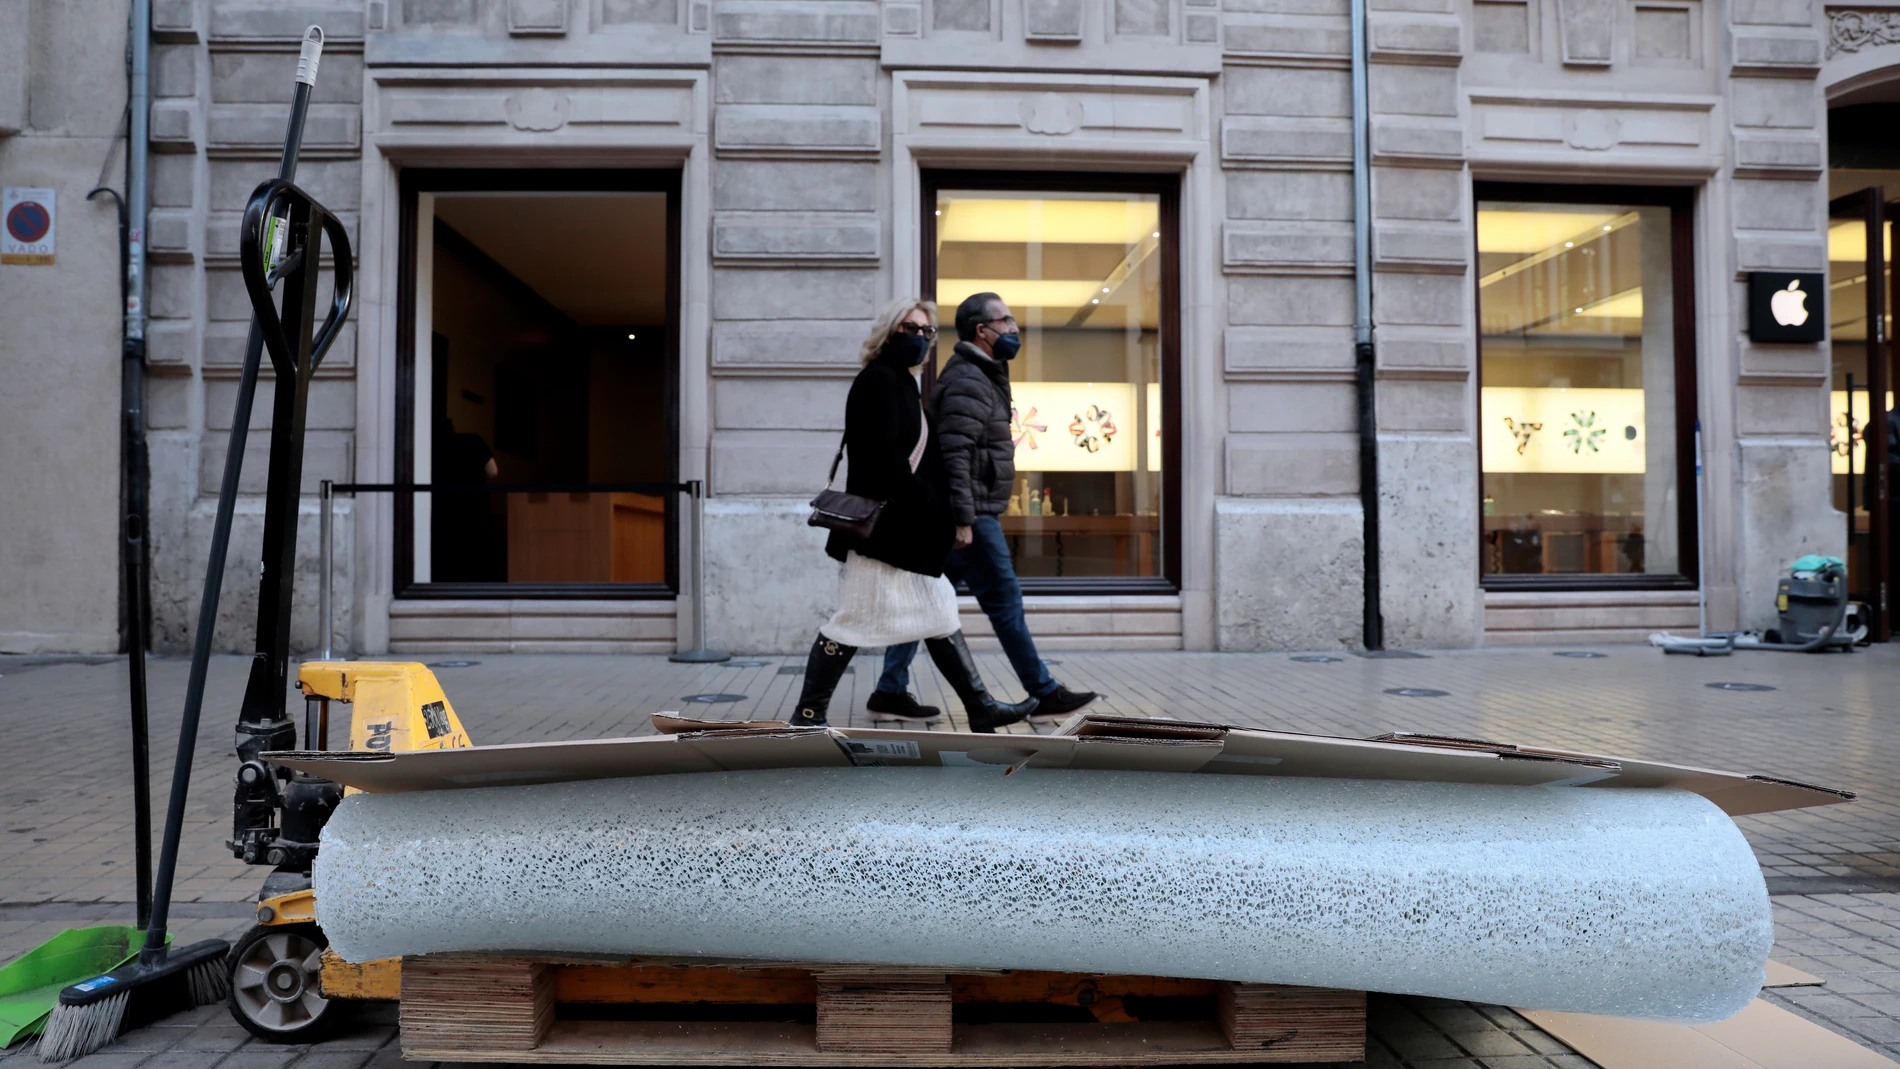 Dos personas pasan junto al cristal roto y ante la tienda Apple ubicada en la calle Colón, en pleno centro de València